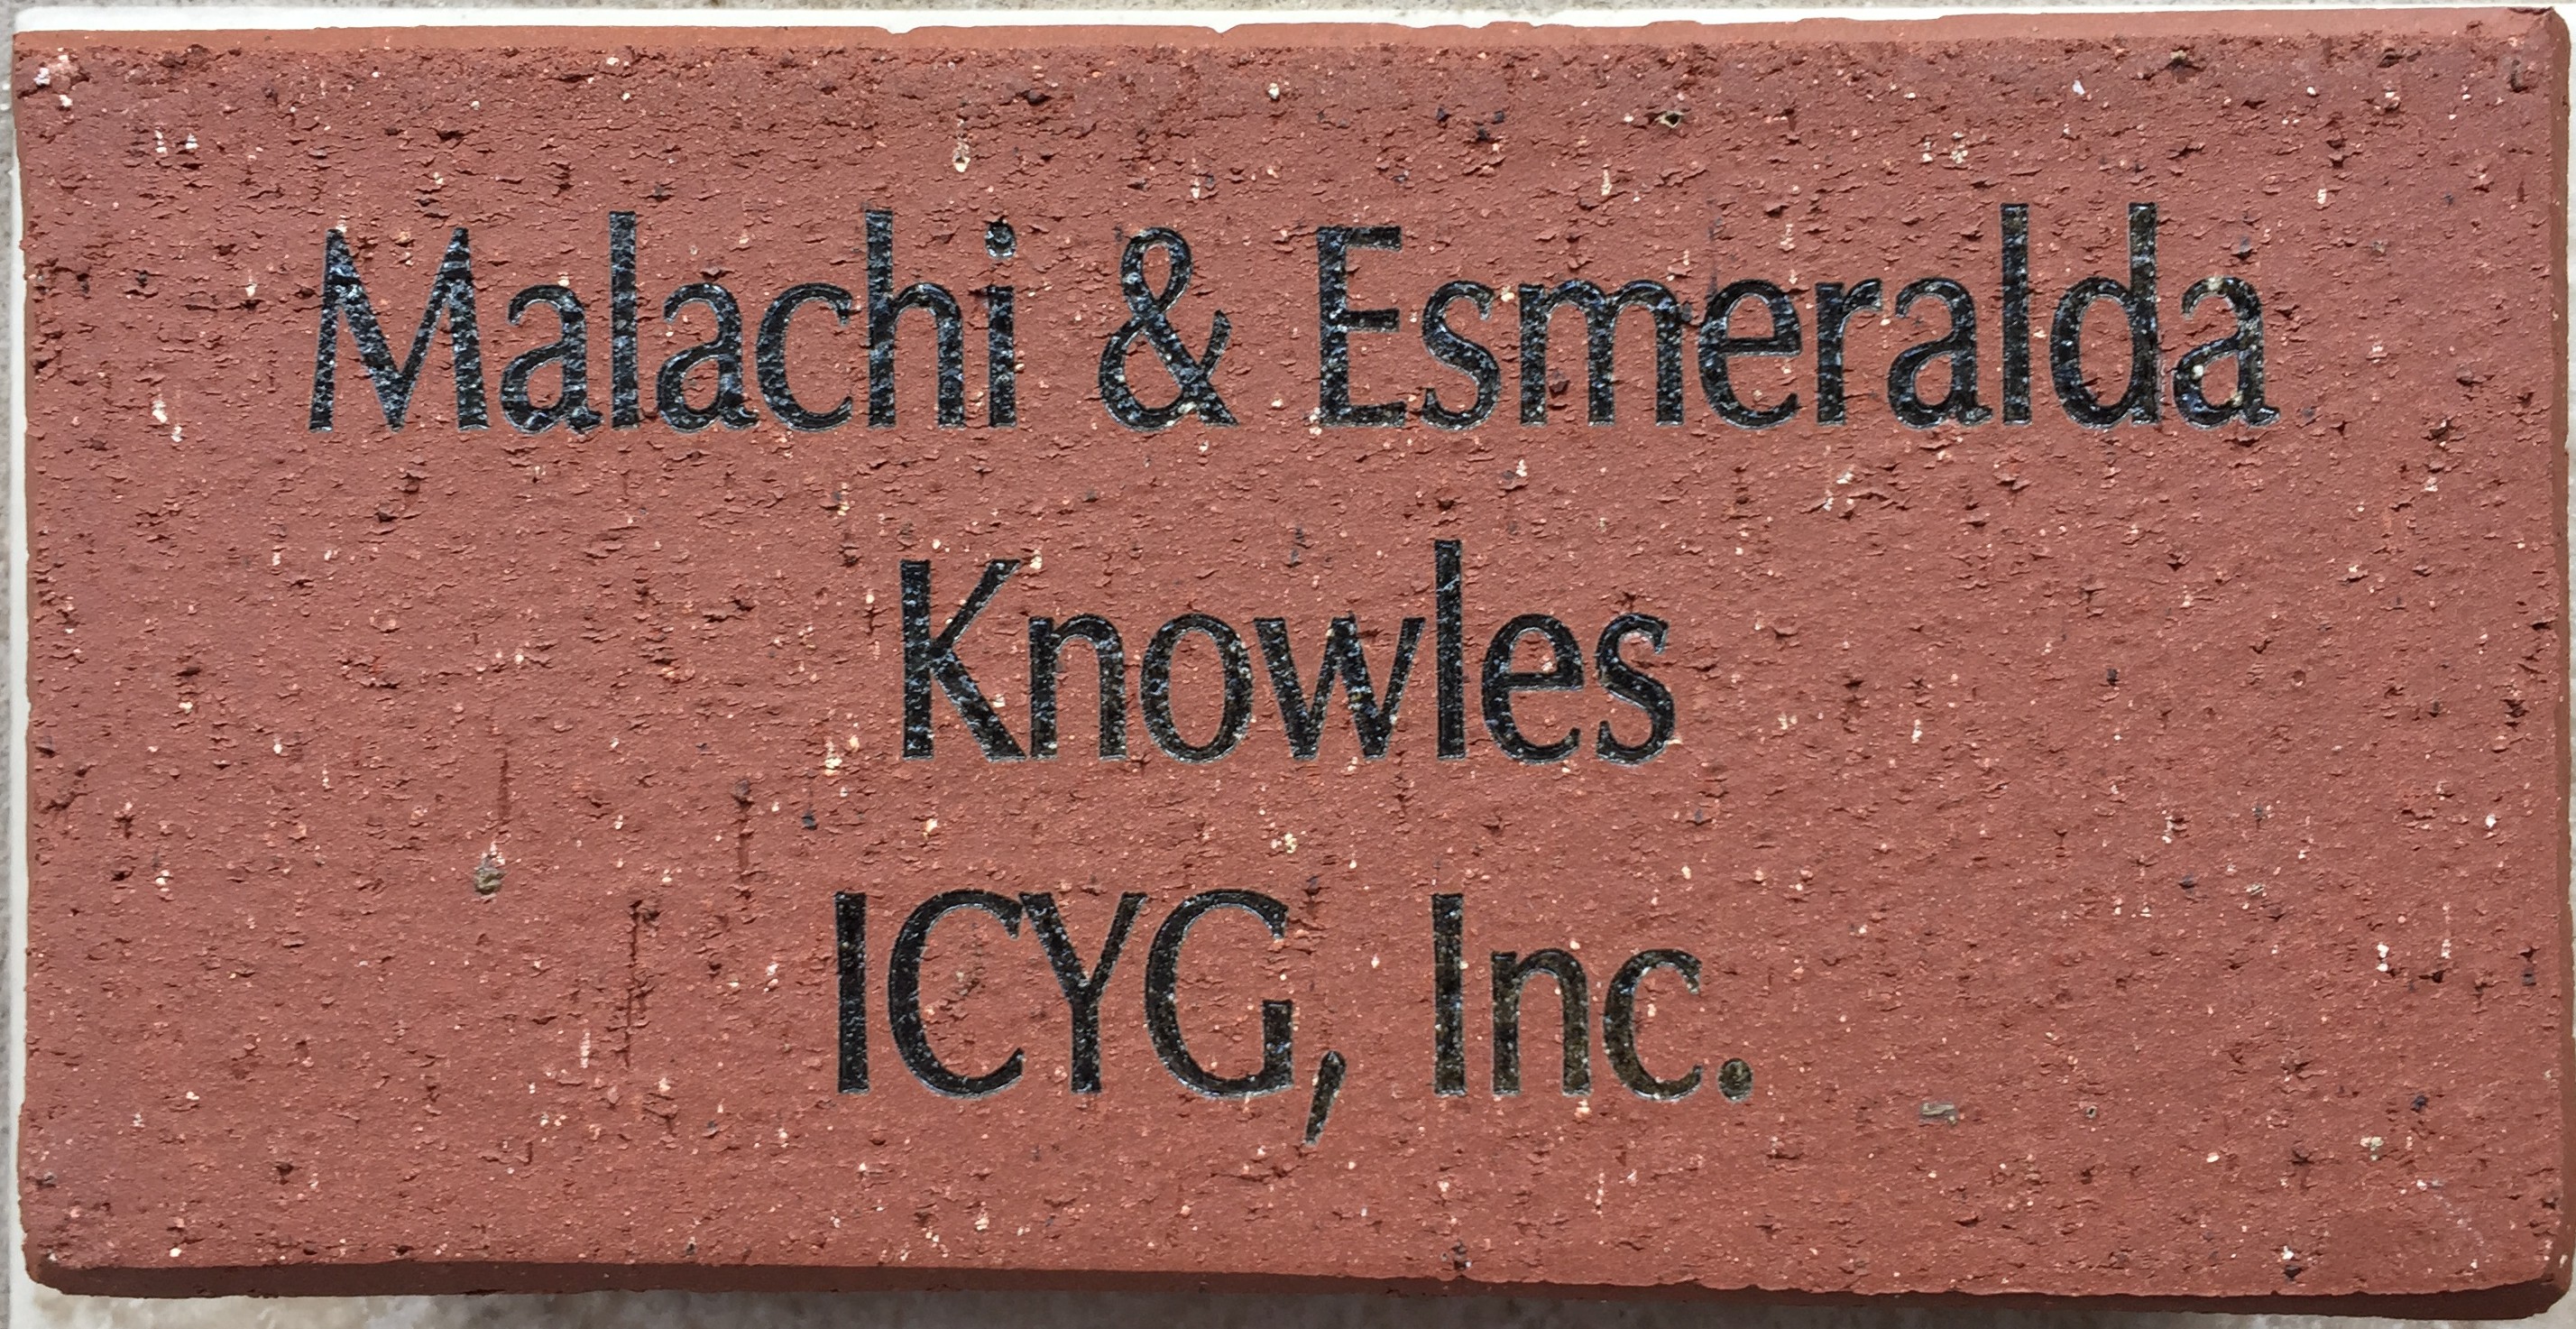 Malachi and Esmeralda Knowles